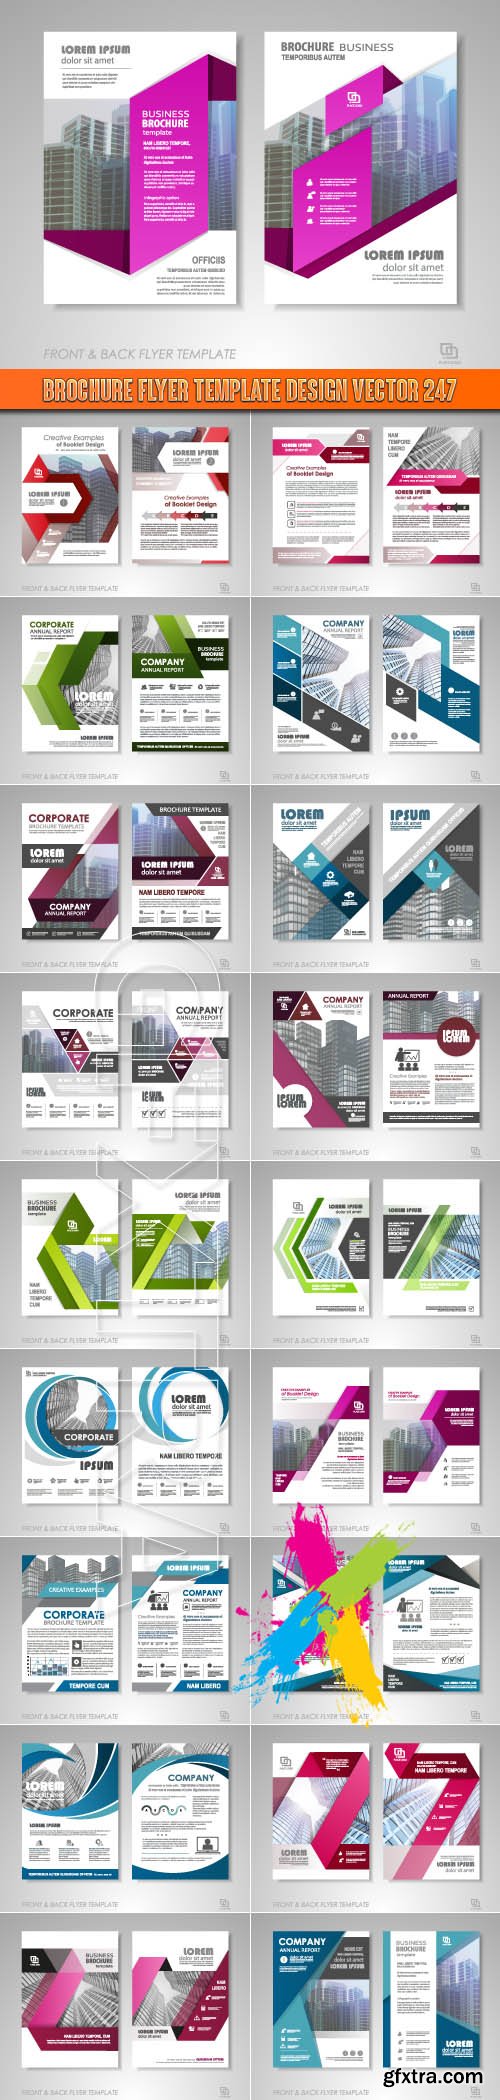 Brochure flyer template design vector 247